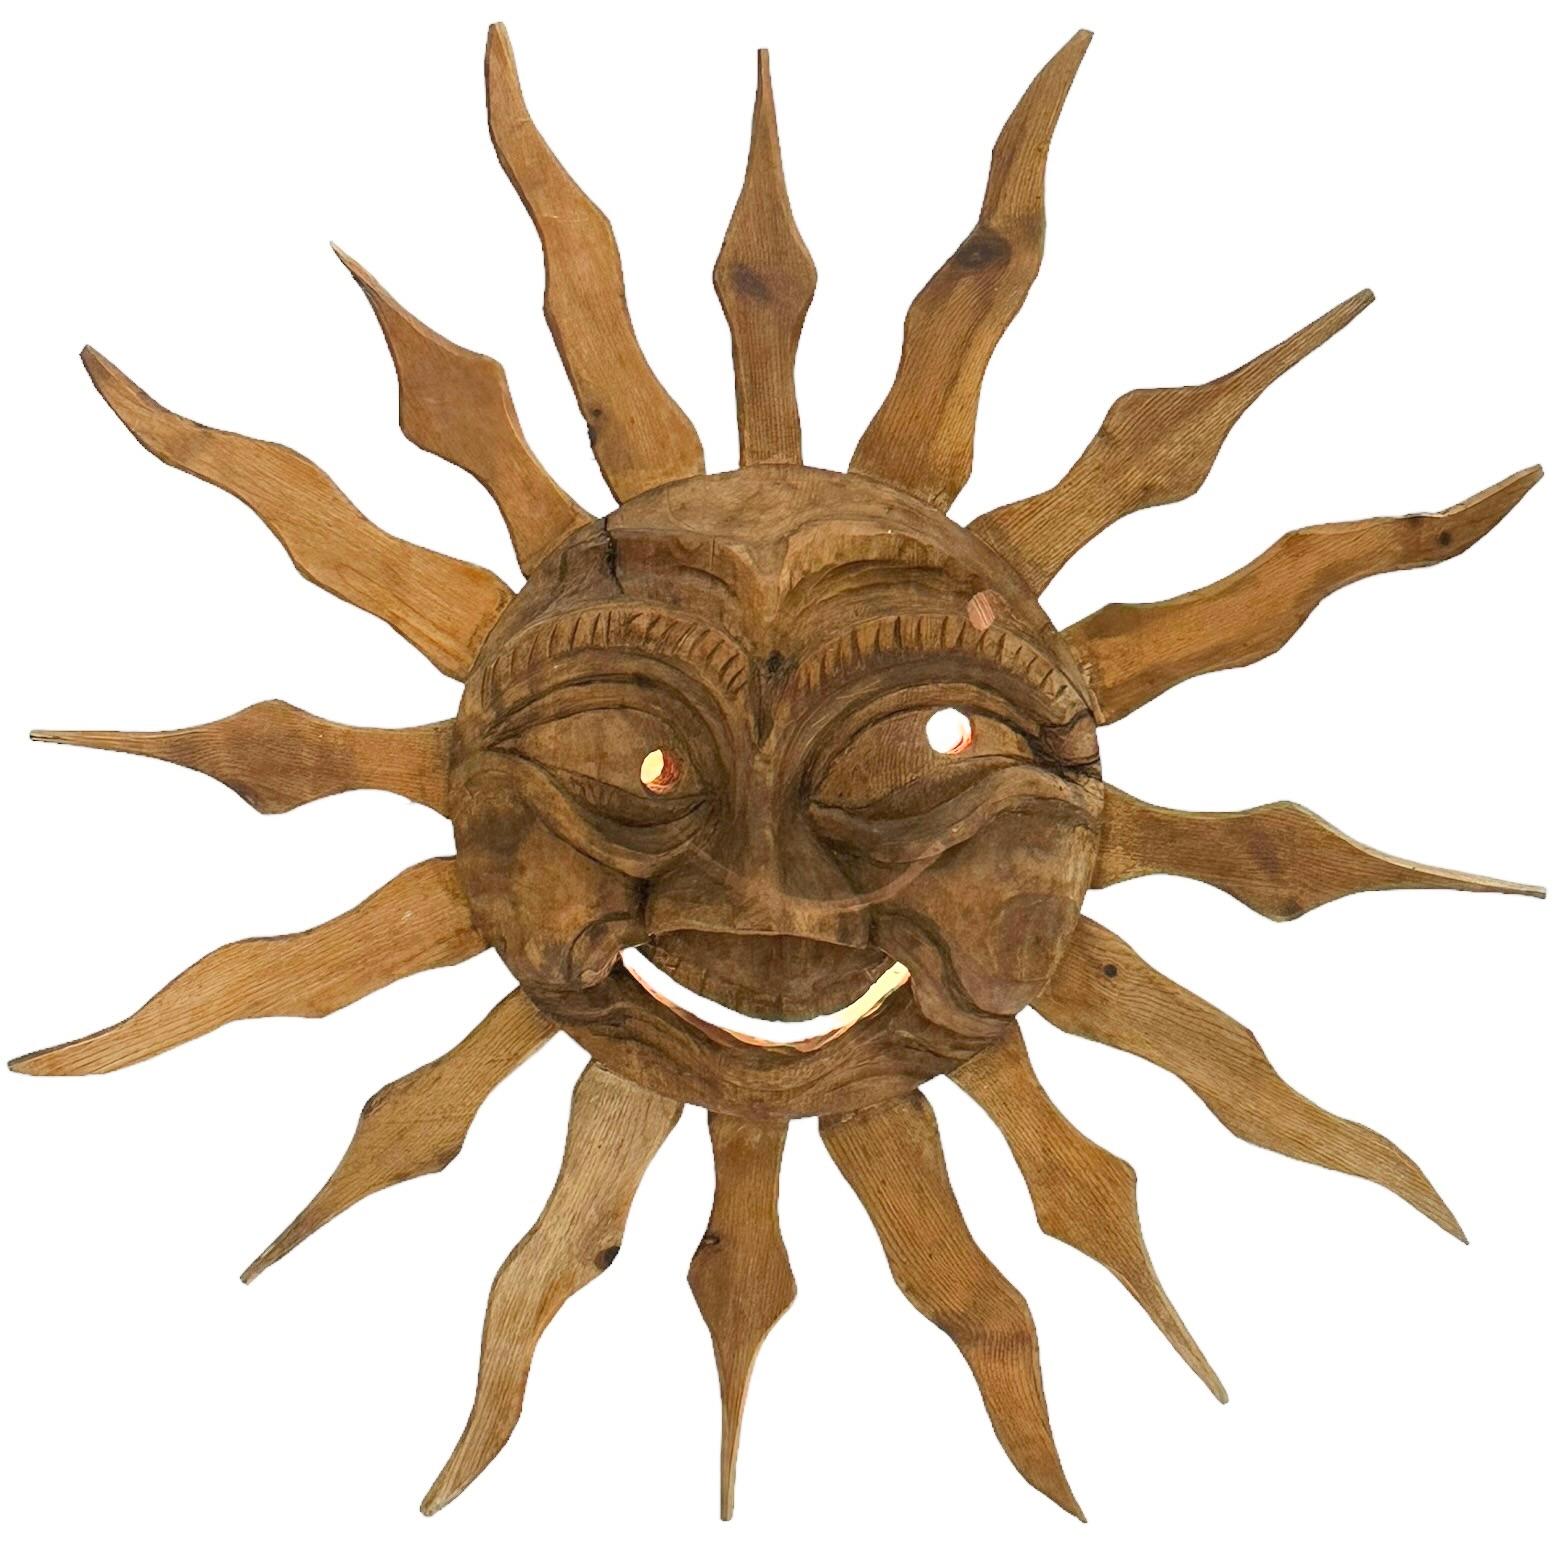 Magnifique sculpture murale en bois, fabriquée à la main, représentant le visage du soleil. Fabriqué en Allemagne par un ouvrier du bois dans les années 1900 à 1920. Elle a été remplacée par une applique murale dans les années 1950. Magnifique